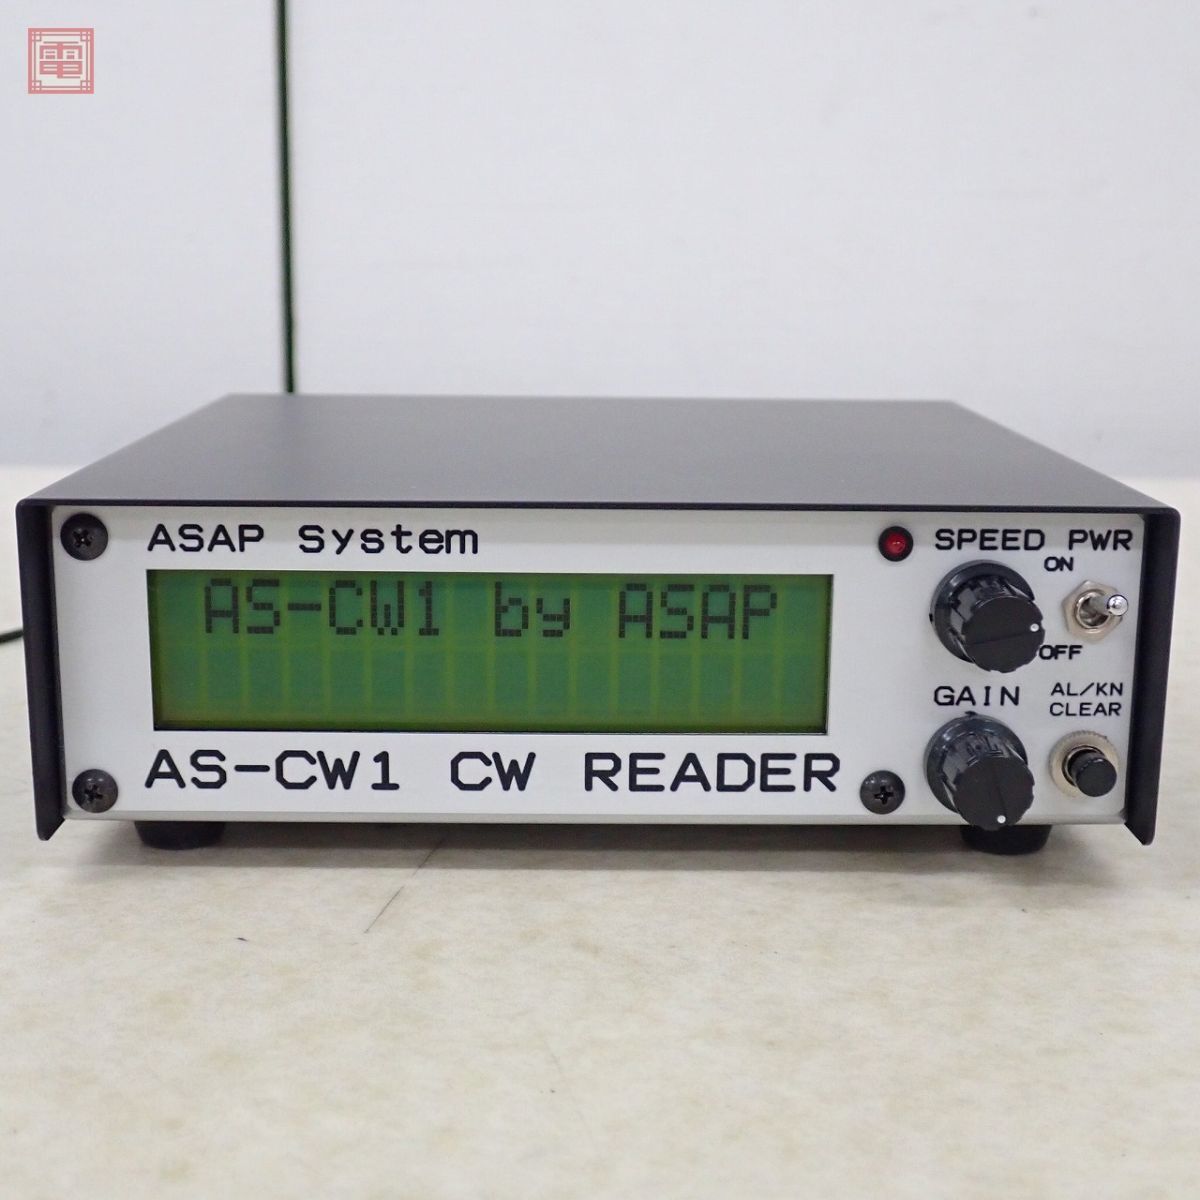 asap система AS-CW1 молдинг s сигнал .. машина CW.. машина руководство пользователя * оригинальная коробка есть ASAP SYSTEM[20